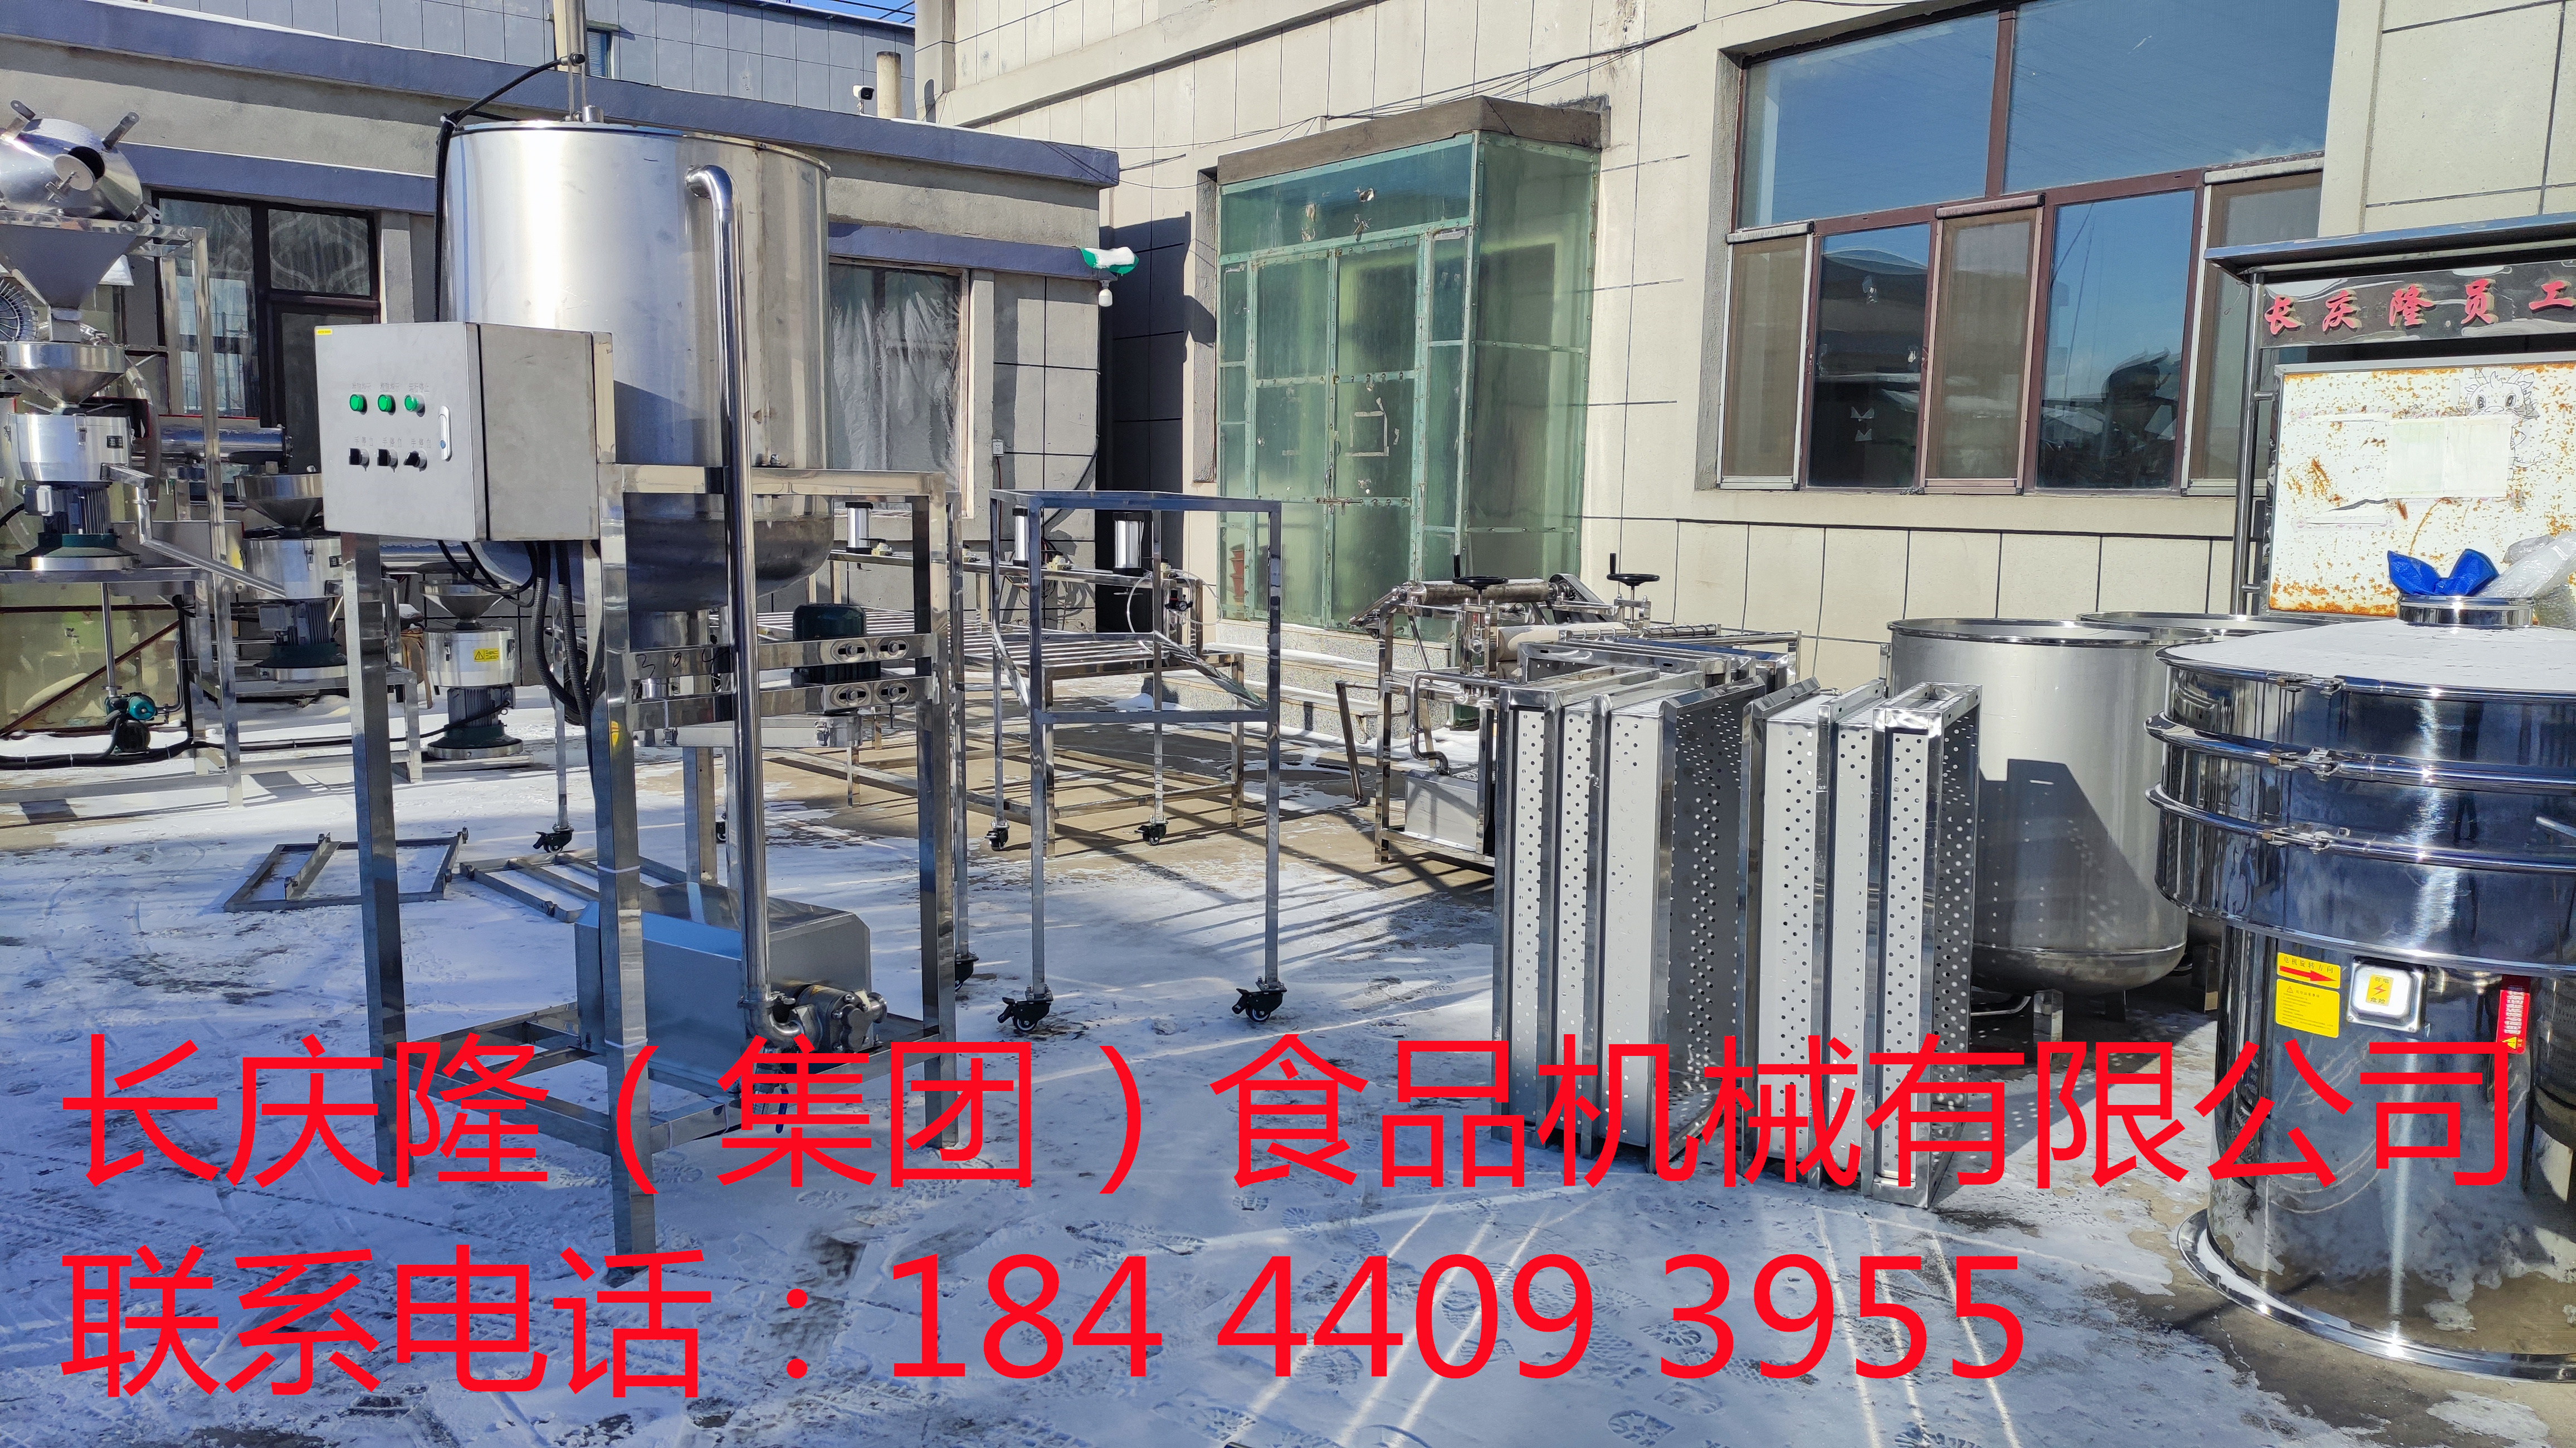 发往锦州的大型豆腐机设备装车发货 (2)_副本.jpg